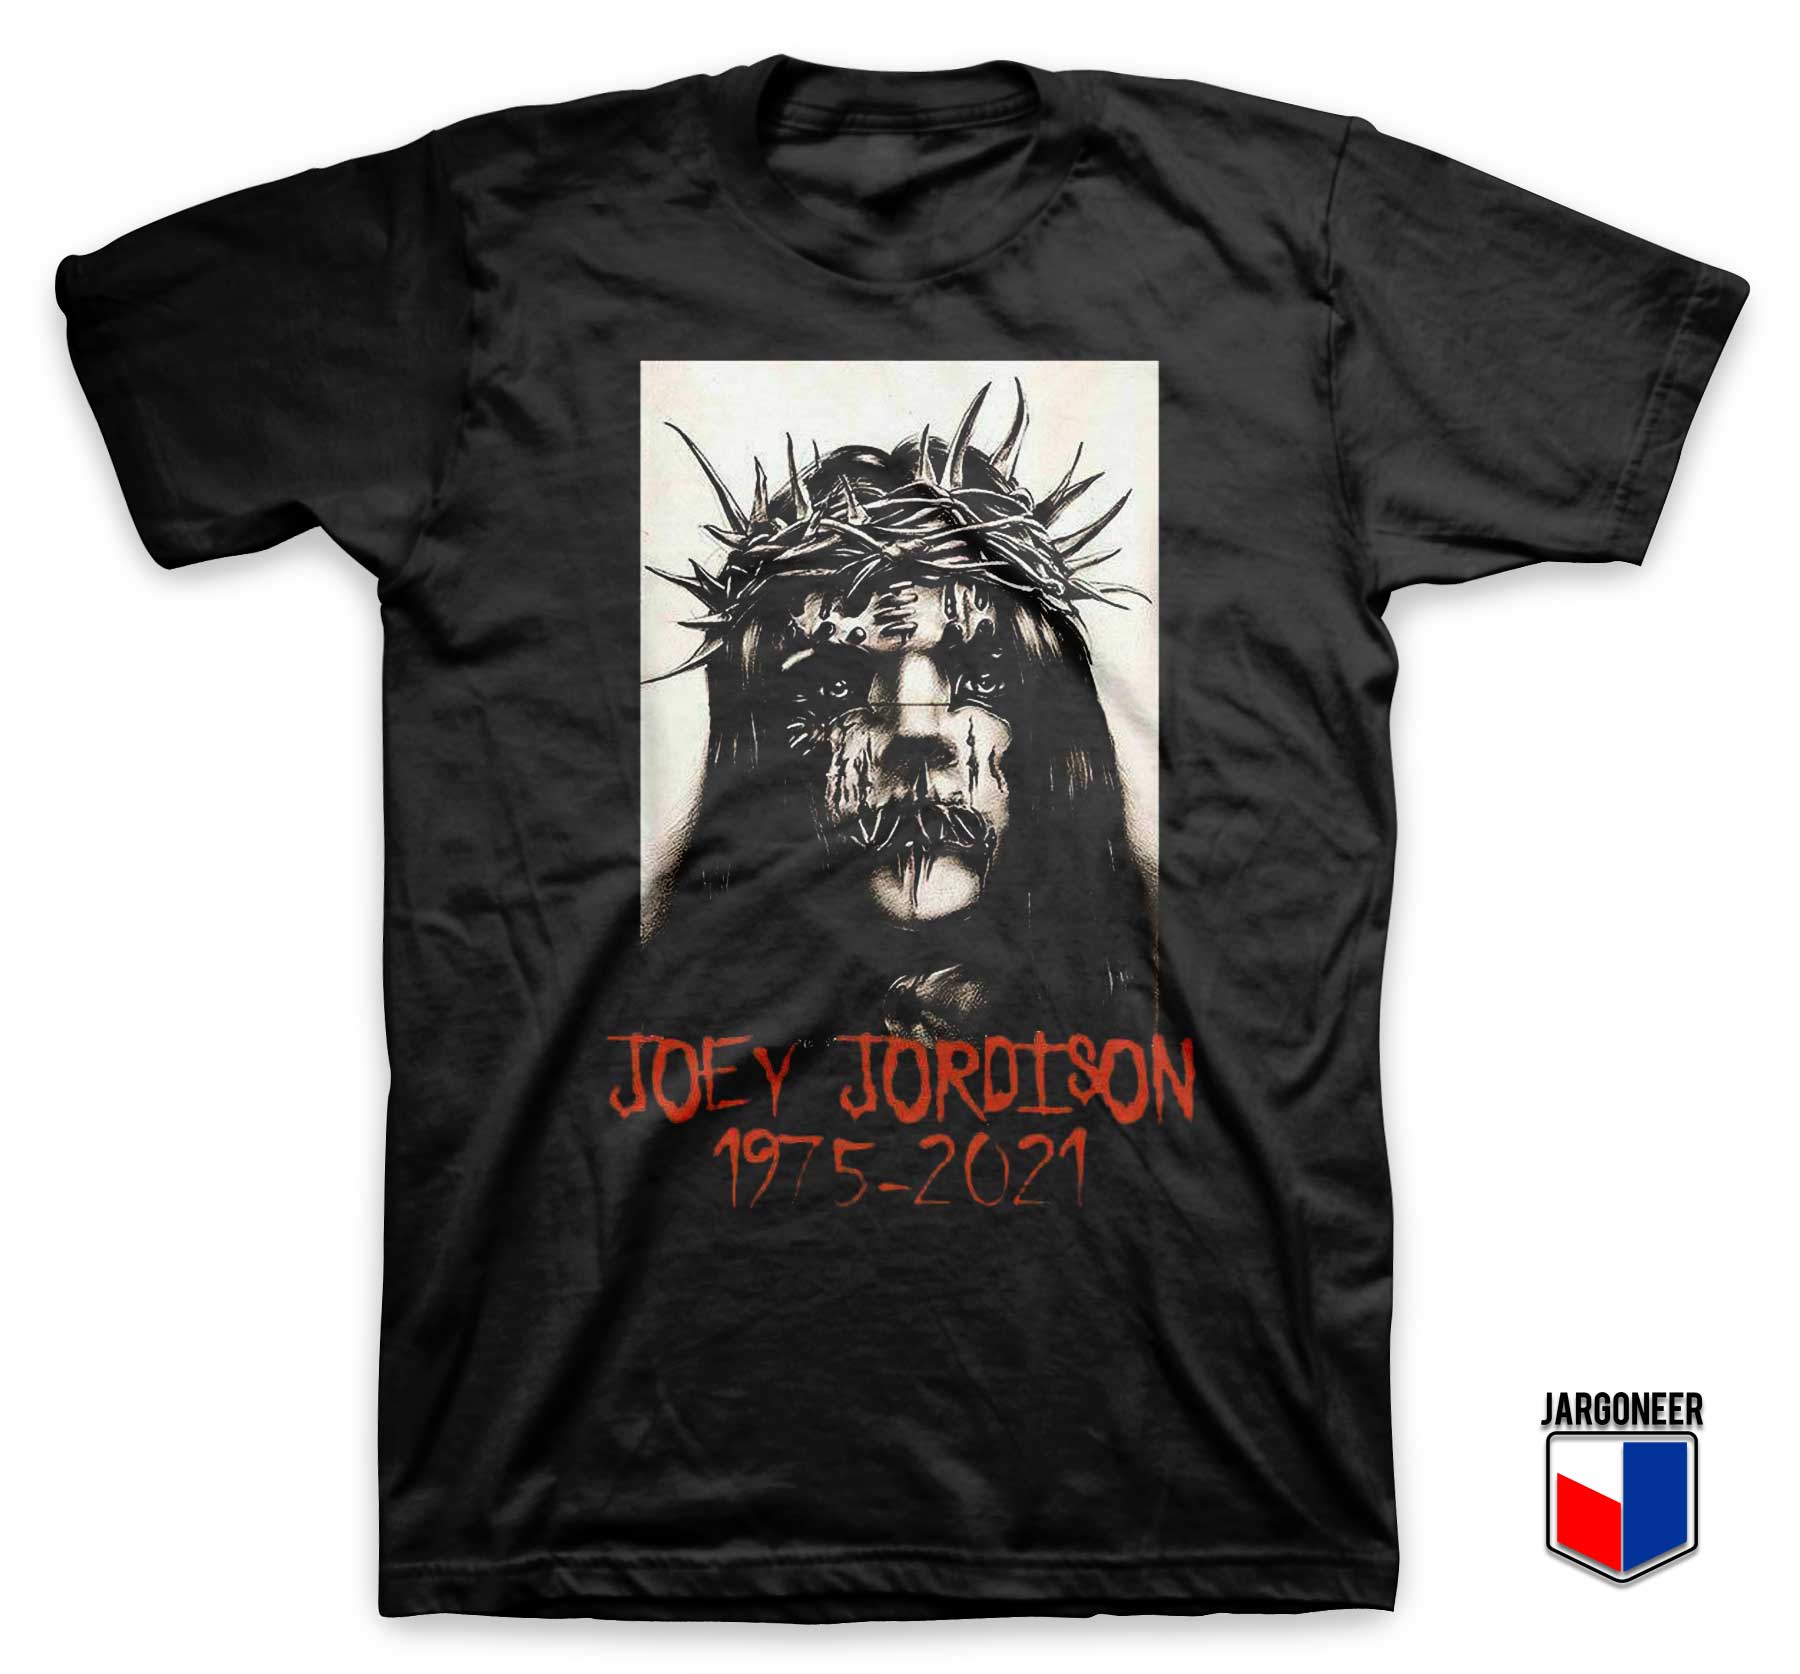 Joey Jordison Slipknot 1975 2021 T Shirt - Shop Unique Graphic Cool Shirt Designs